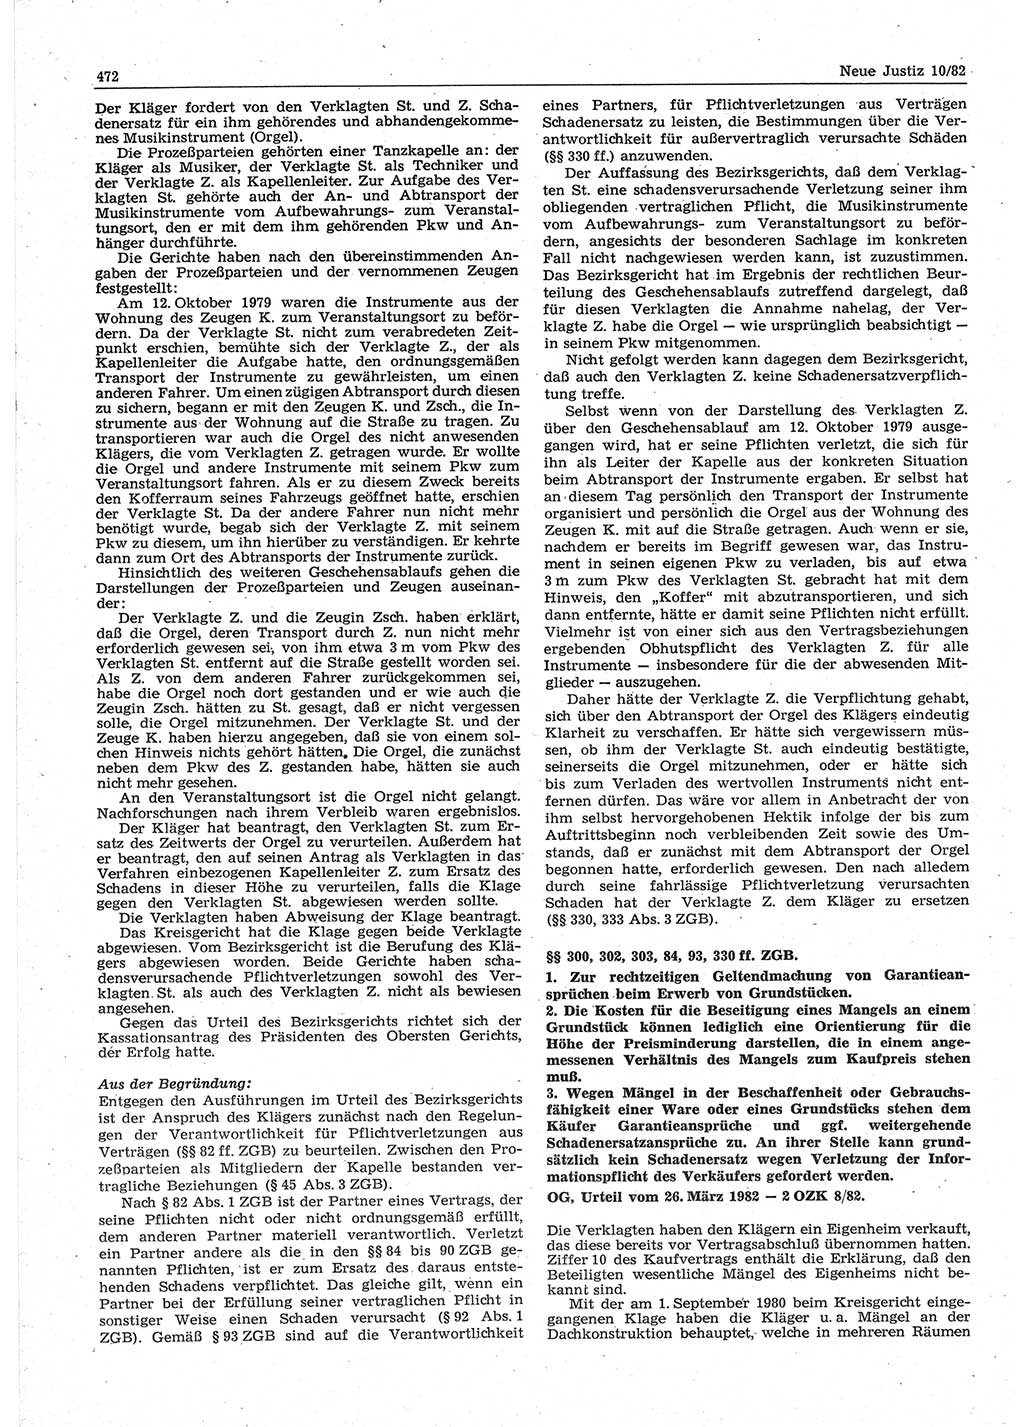 Neue Justiz (NJ), Zeitschrift für sozialistisches Recht und Gesetzlichkeit [Deutsche Demokratische Republik (DDR)], 36. Jahrgang 1982, Seite 472 (NJ DDR 1982, S. 472)